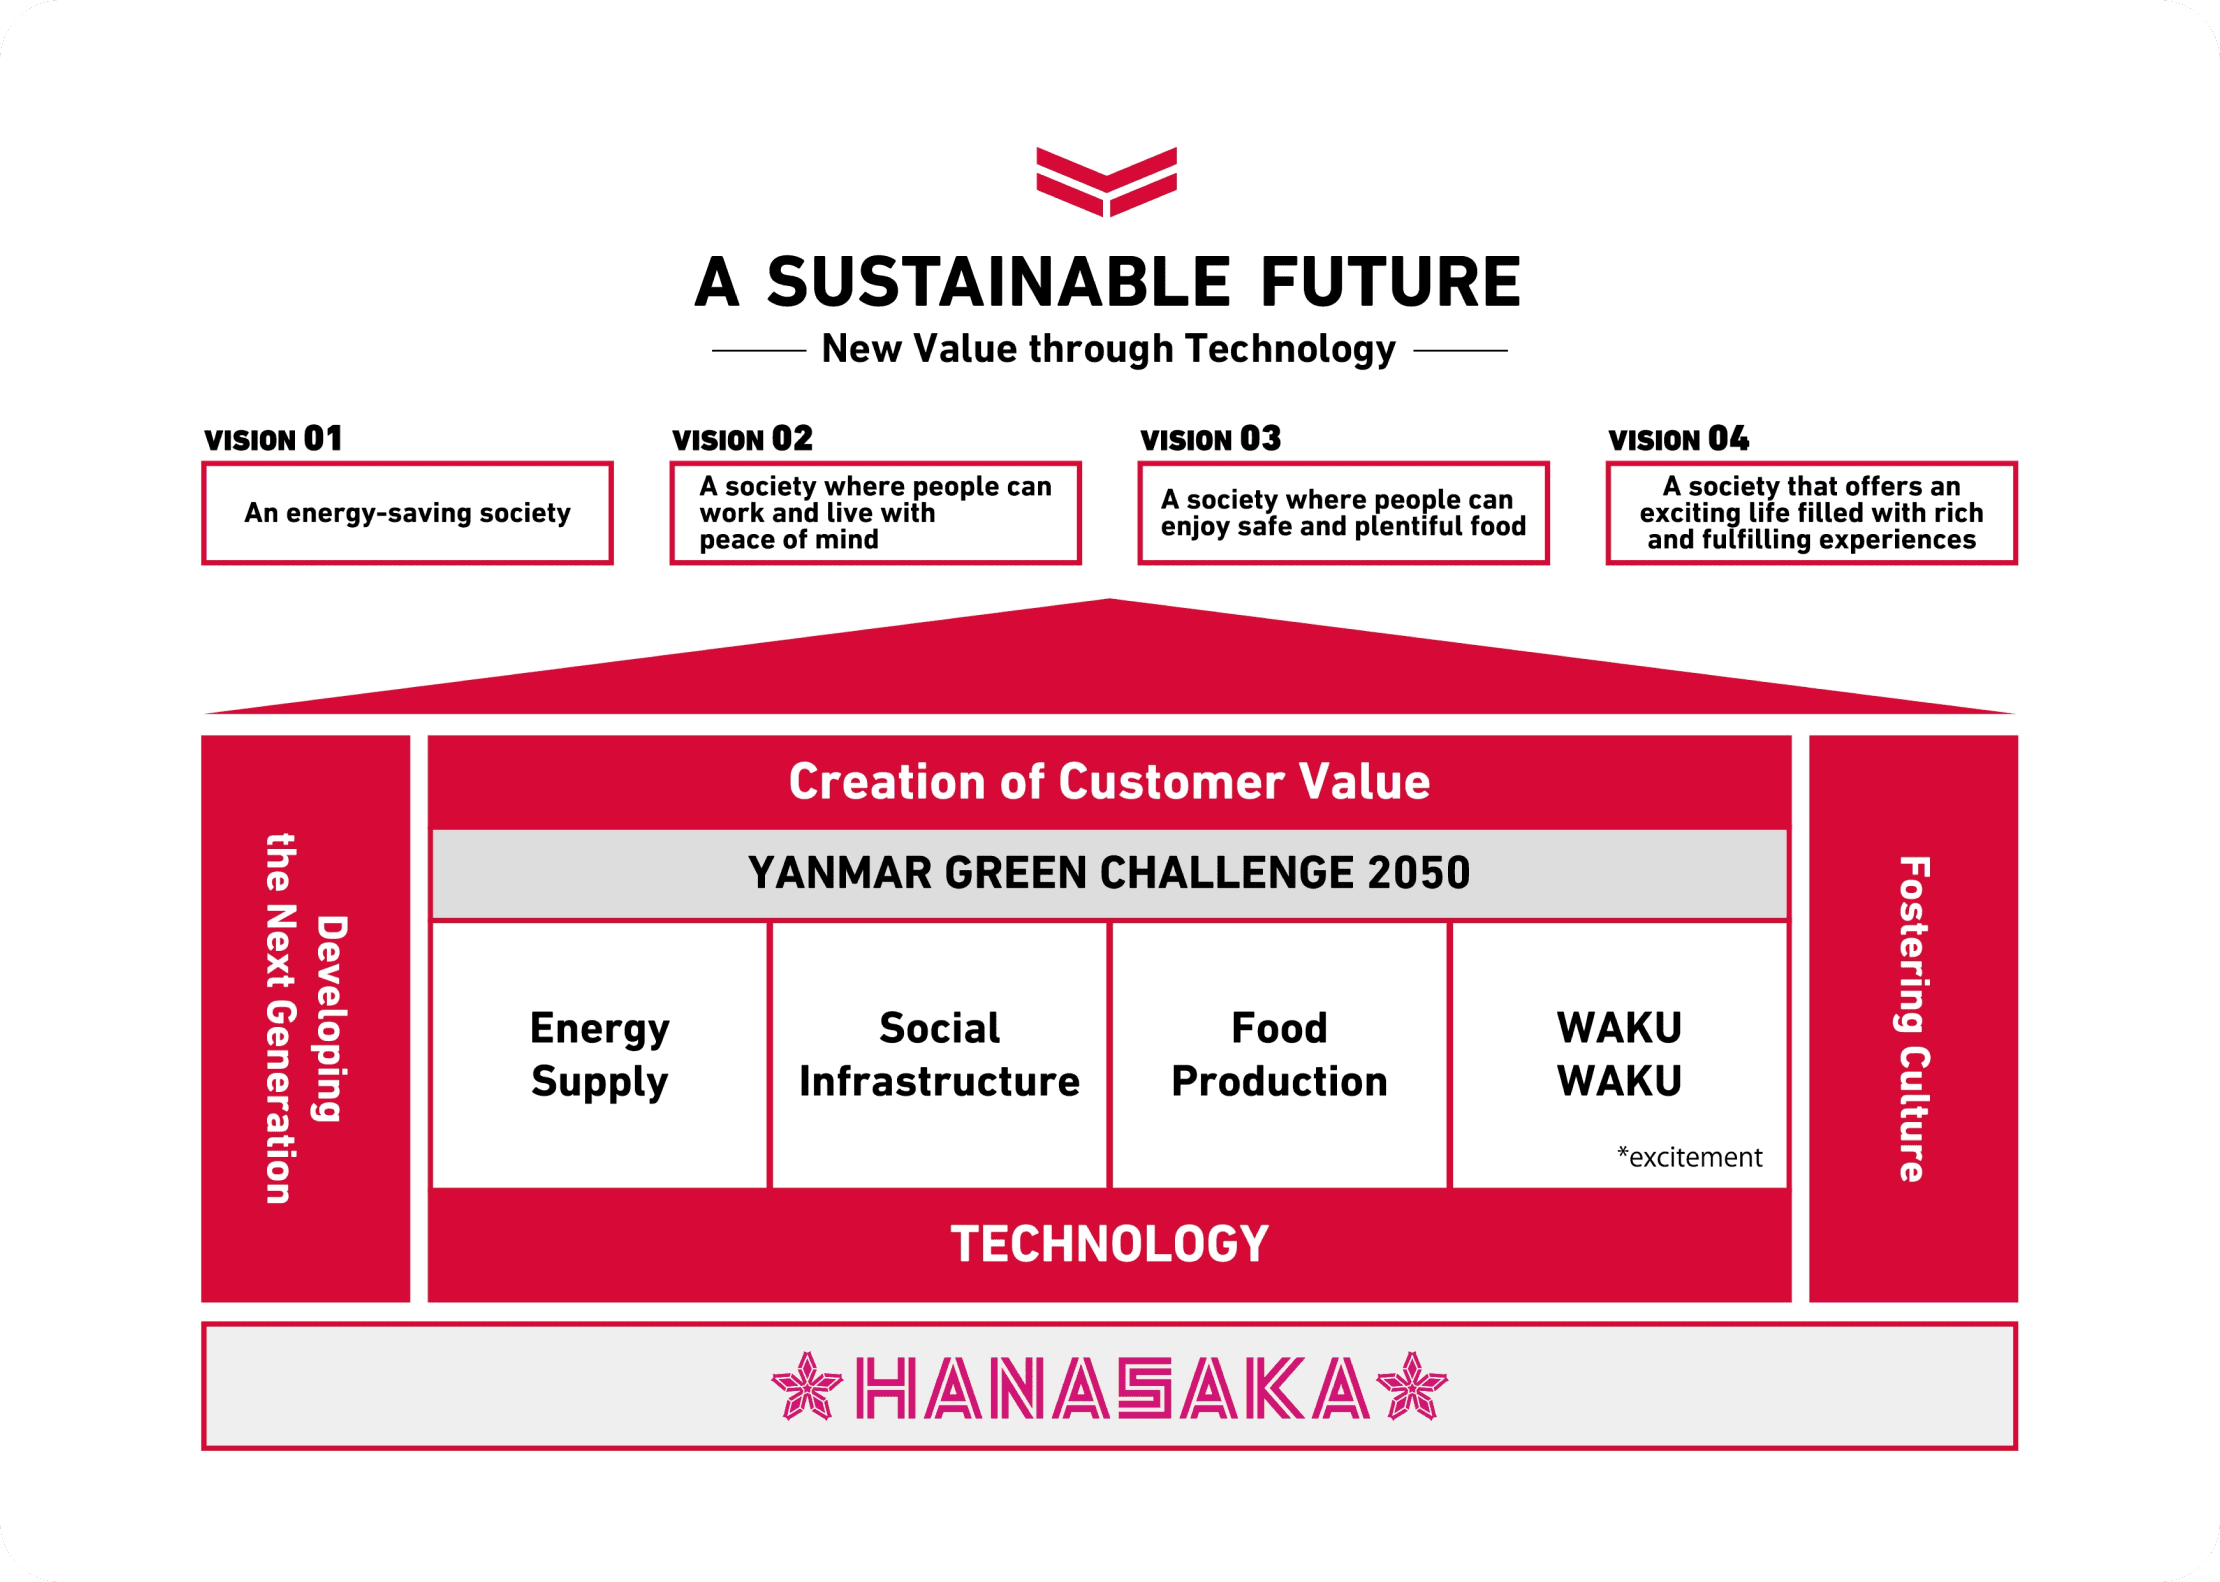 다이어그램은 HANASAKA 기반으로 순차적으로 구축된 FUTURE VISION 및 A SUSTAINABLE FUTURE의 각 비즈니스 활동, 4개 사회를 보여줍니다.